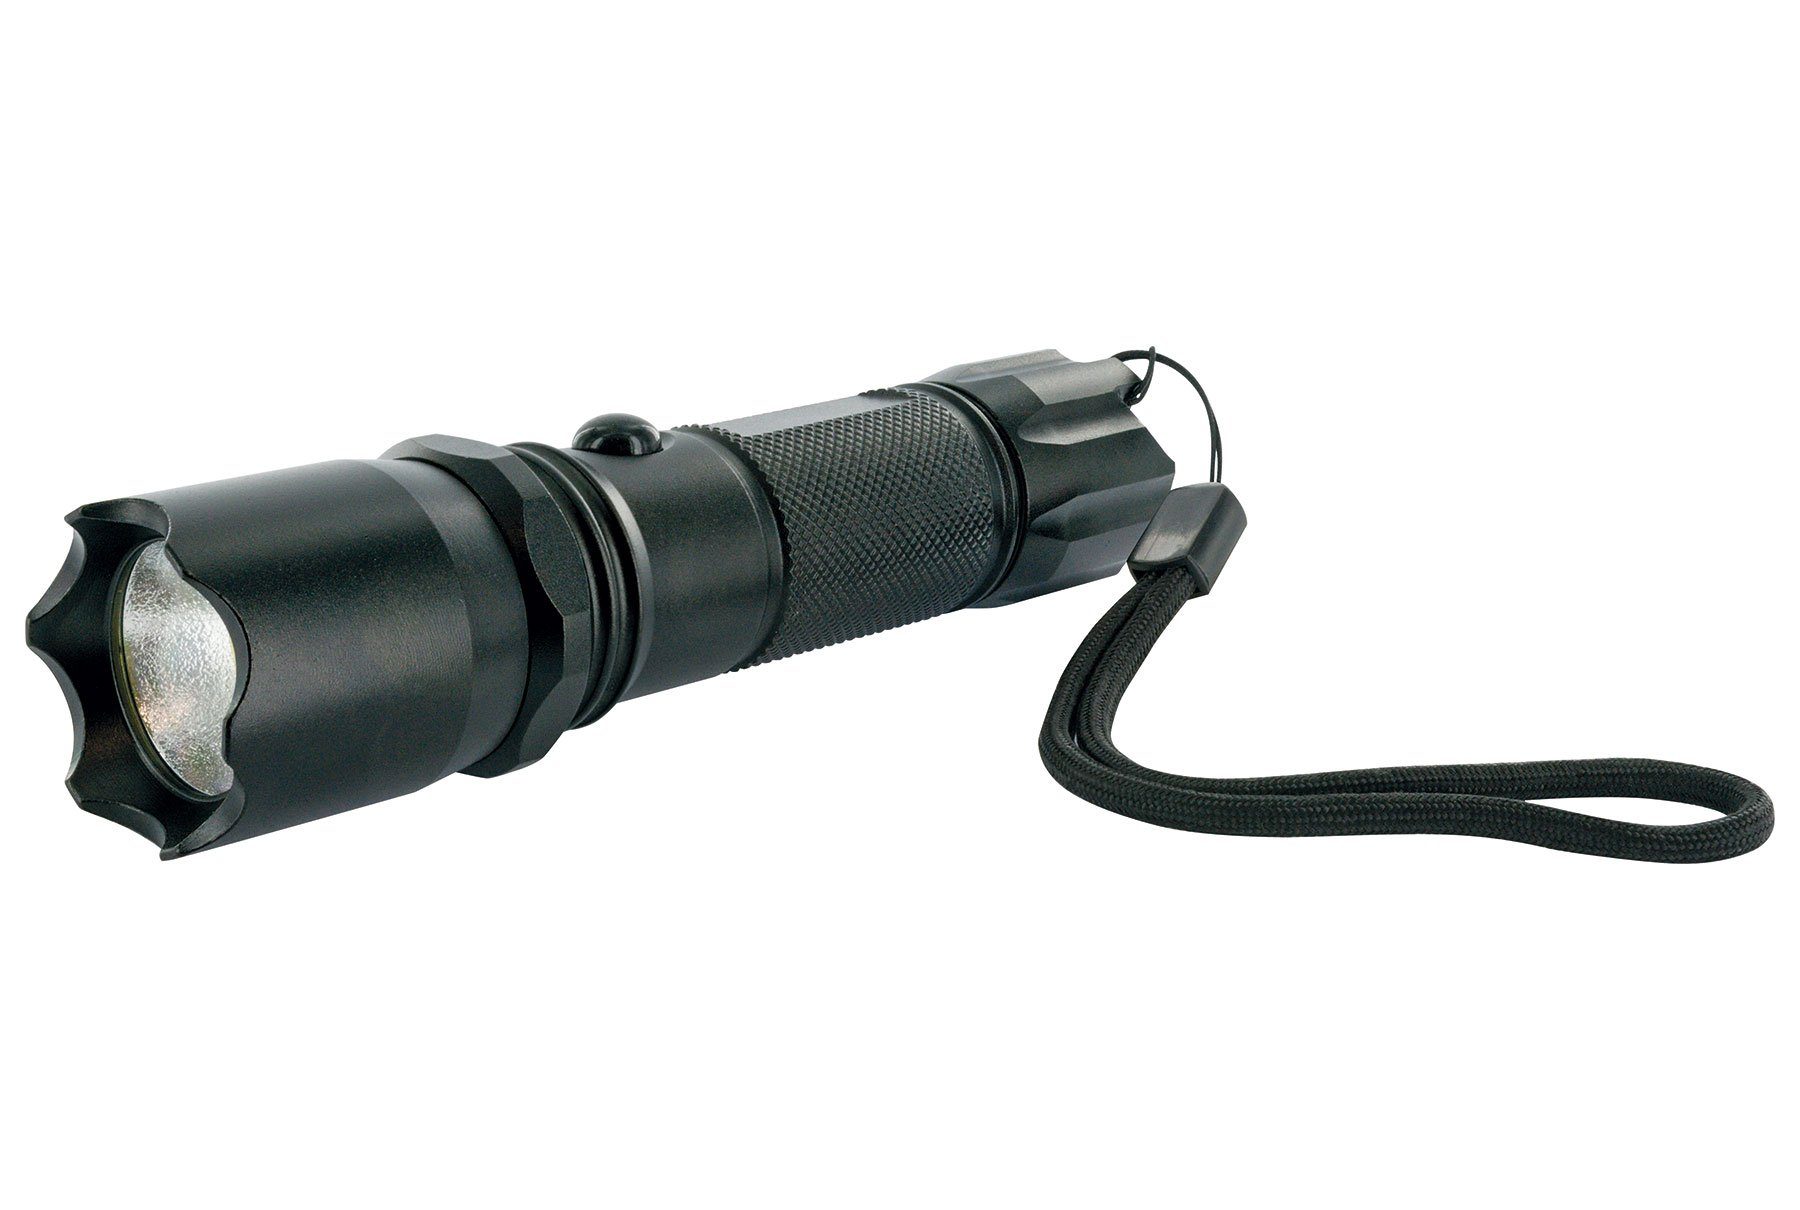 schwarz (1-St., 533 Handschlaufe spritzwassergeschützt), Taschenlampe Schwaiger mit TLED300S LED schlagfest,